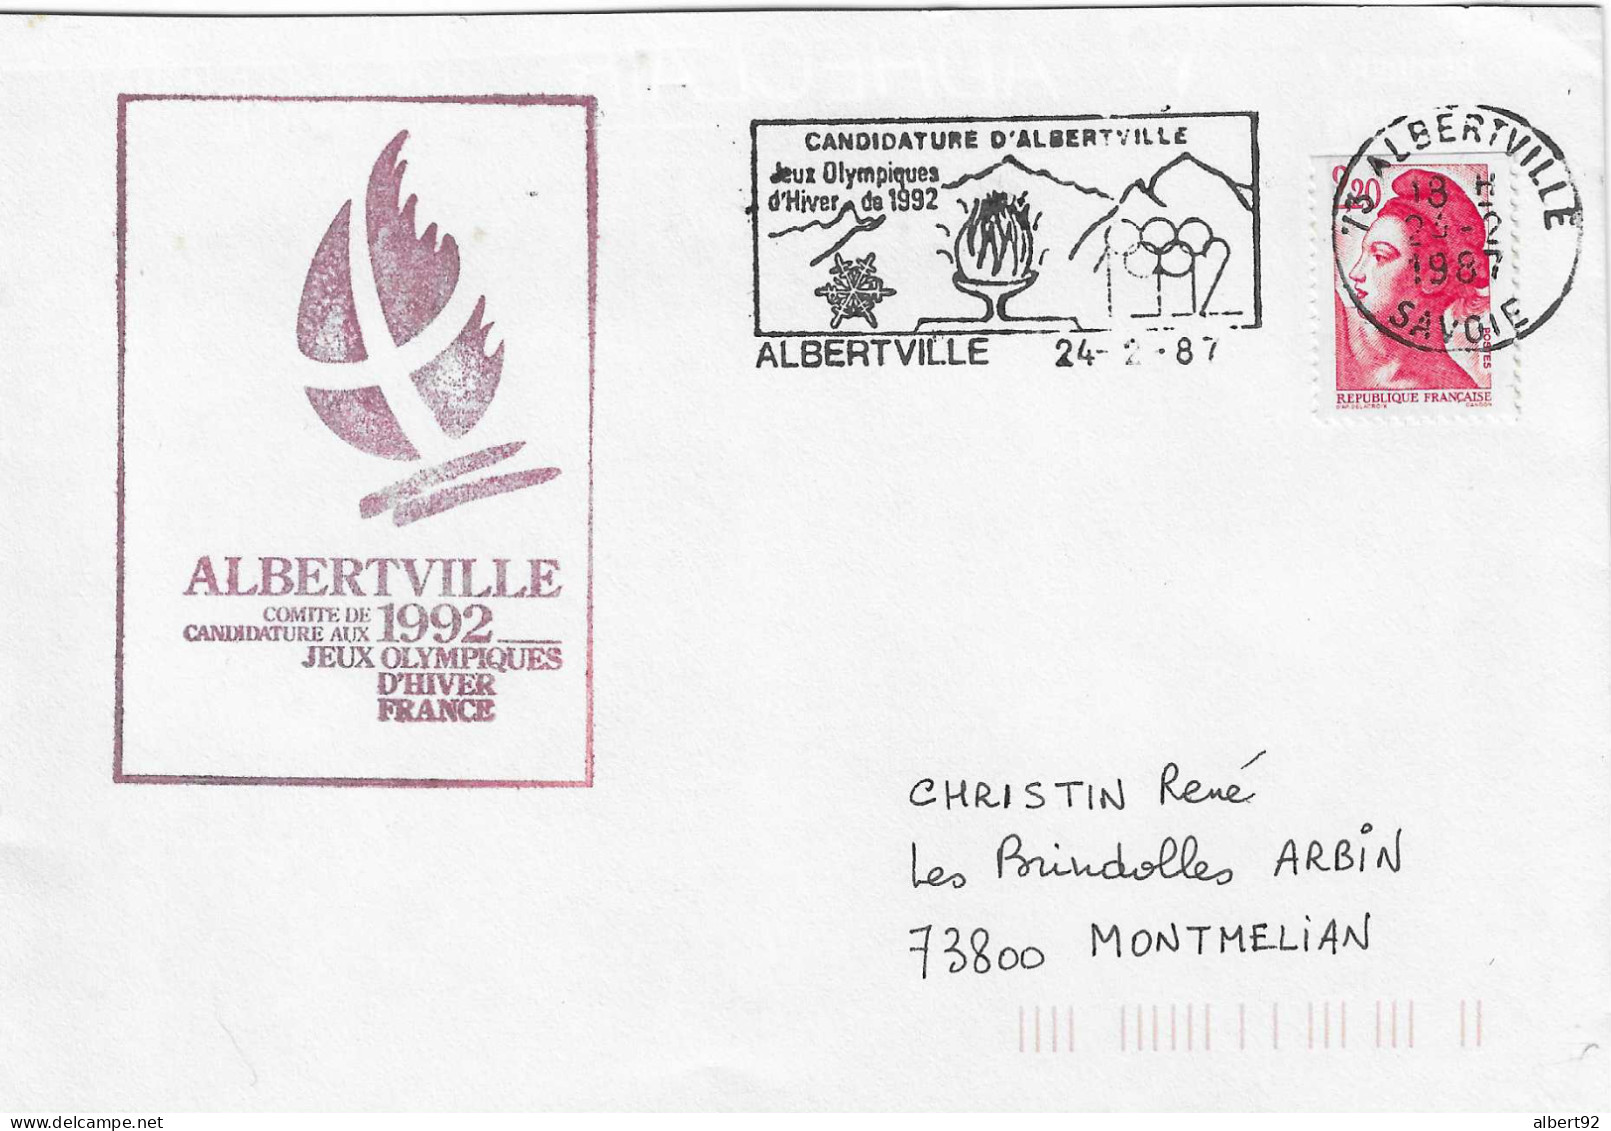 1987 Candidature D'Albertville Aux Jeux Olympiques D'Hiver 1992: Flamme Postale + Cachet Du Comité De Candidature - Inverno1992: Albertville